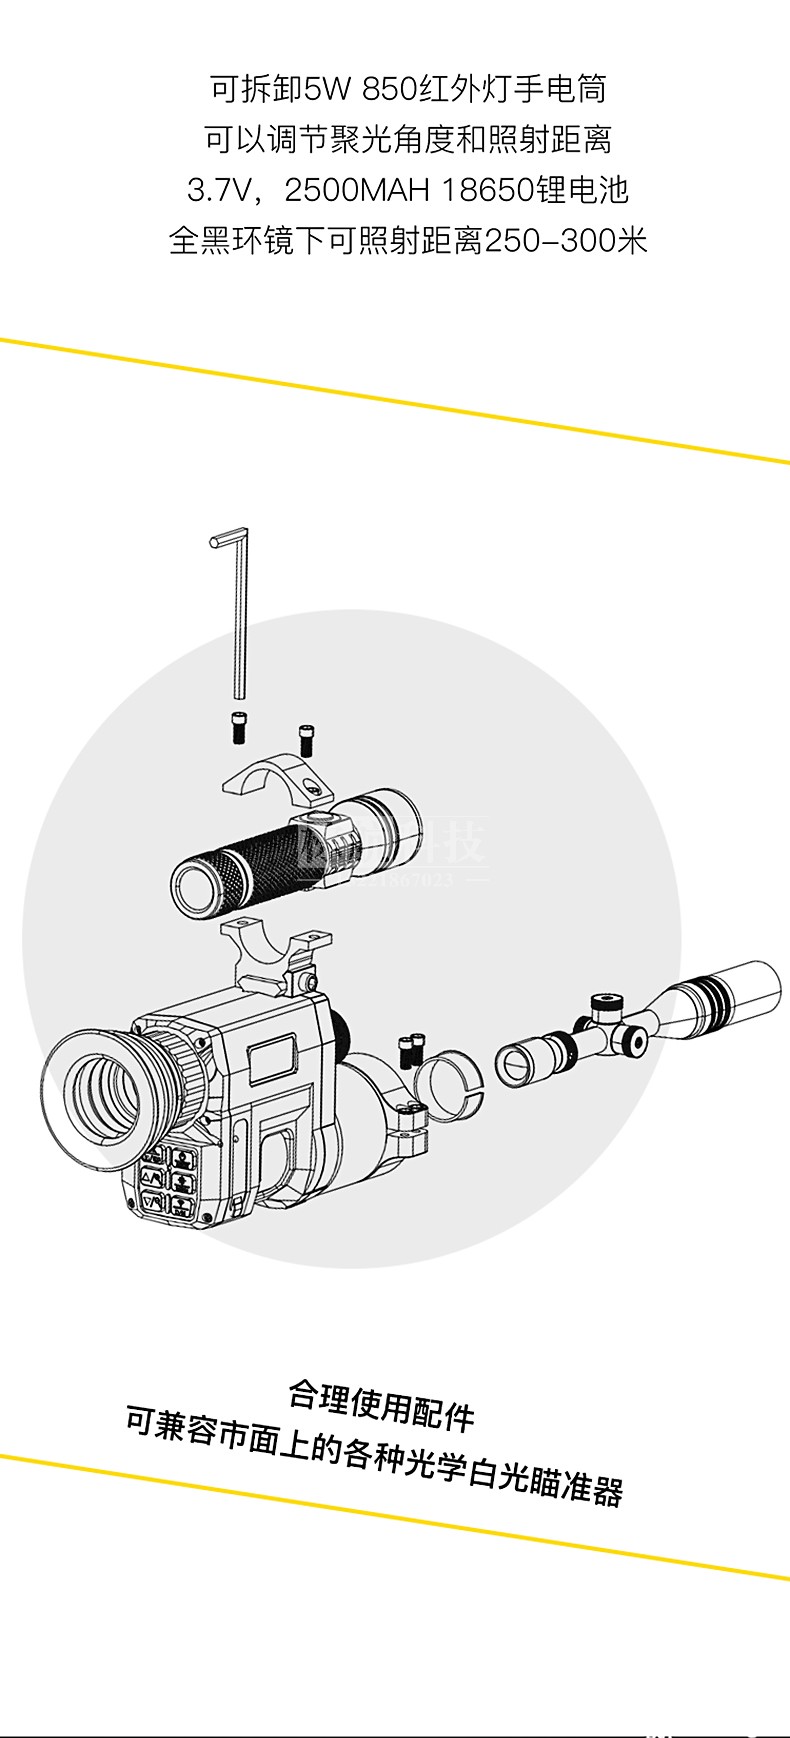 NV3000夜视瞄准镜 可兼容各种瞄准器.jpg